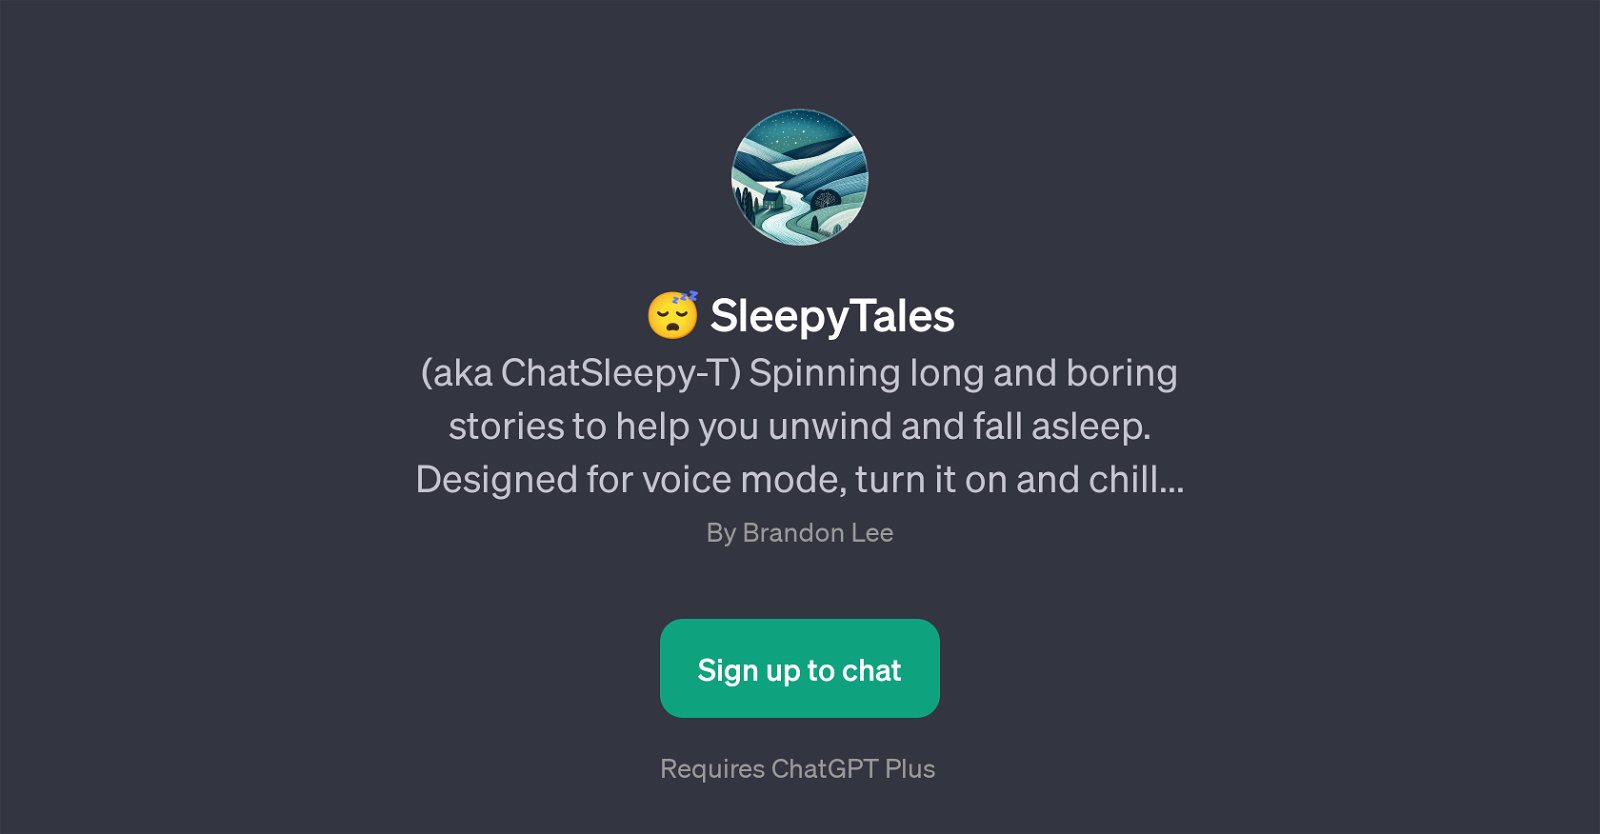 SleepyTales website